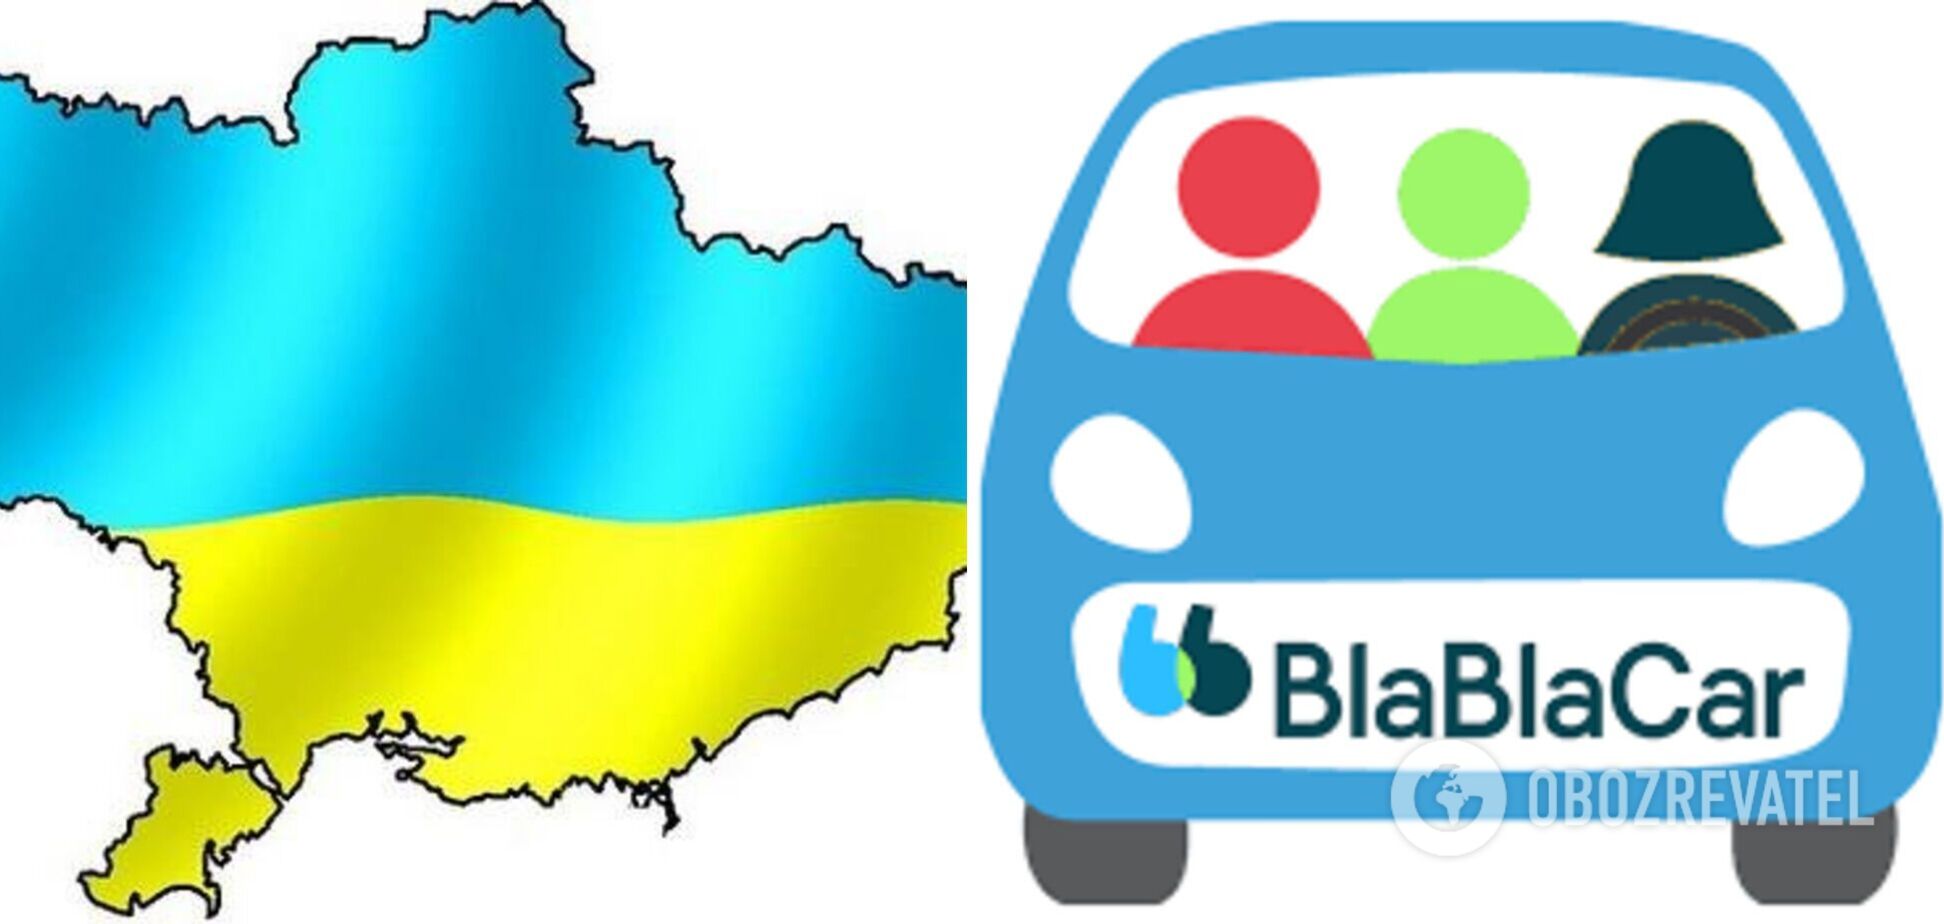 BlaBlaCar назвал рекламу с картой Украины без Крыма 'досадной ошибкой': опубликовано заявление